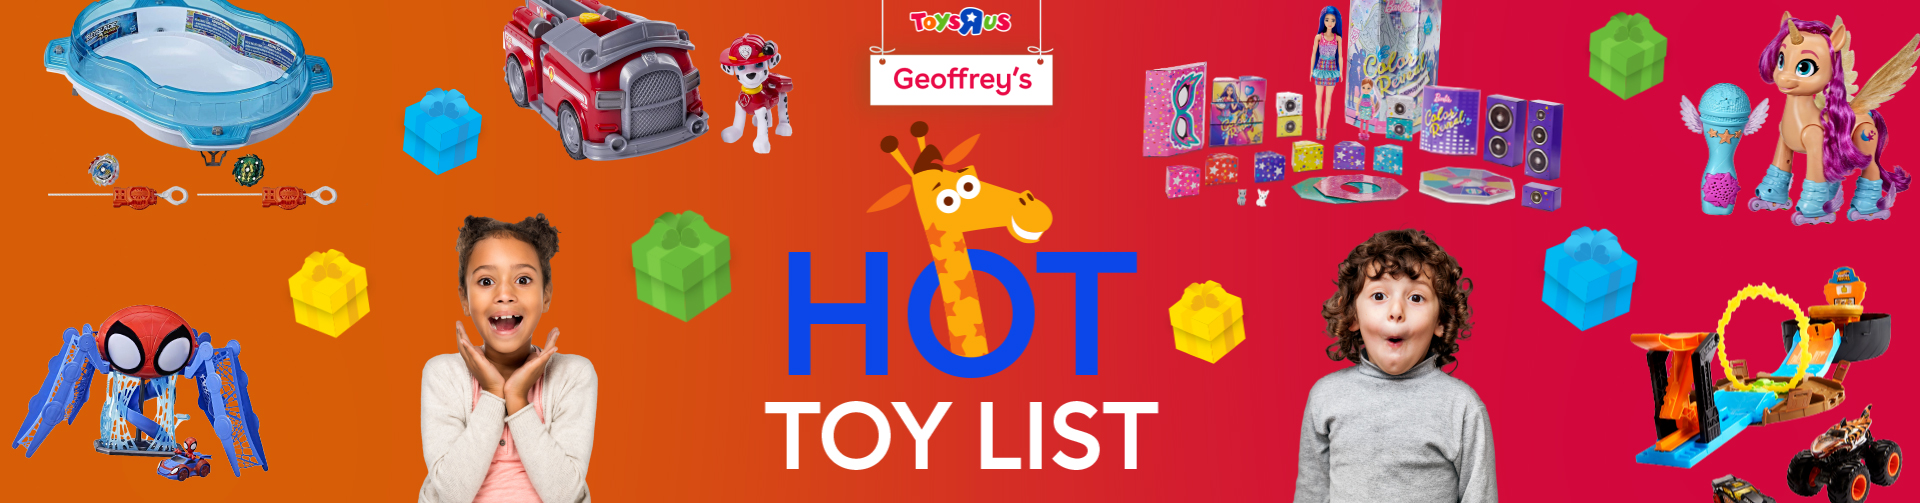 geoffreys hot toy list